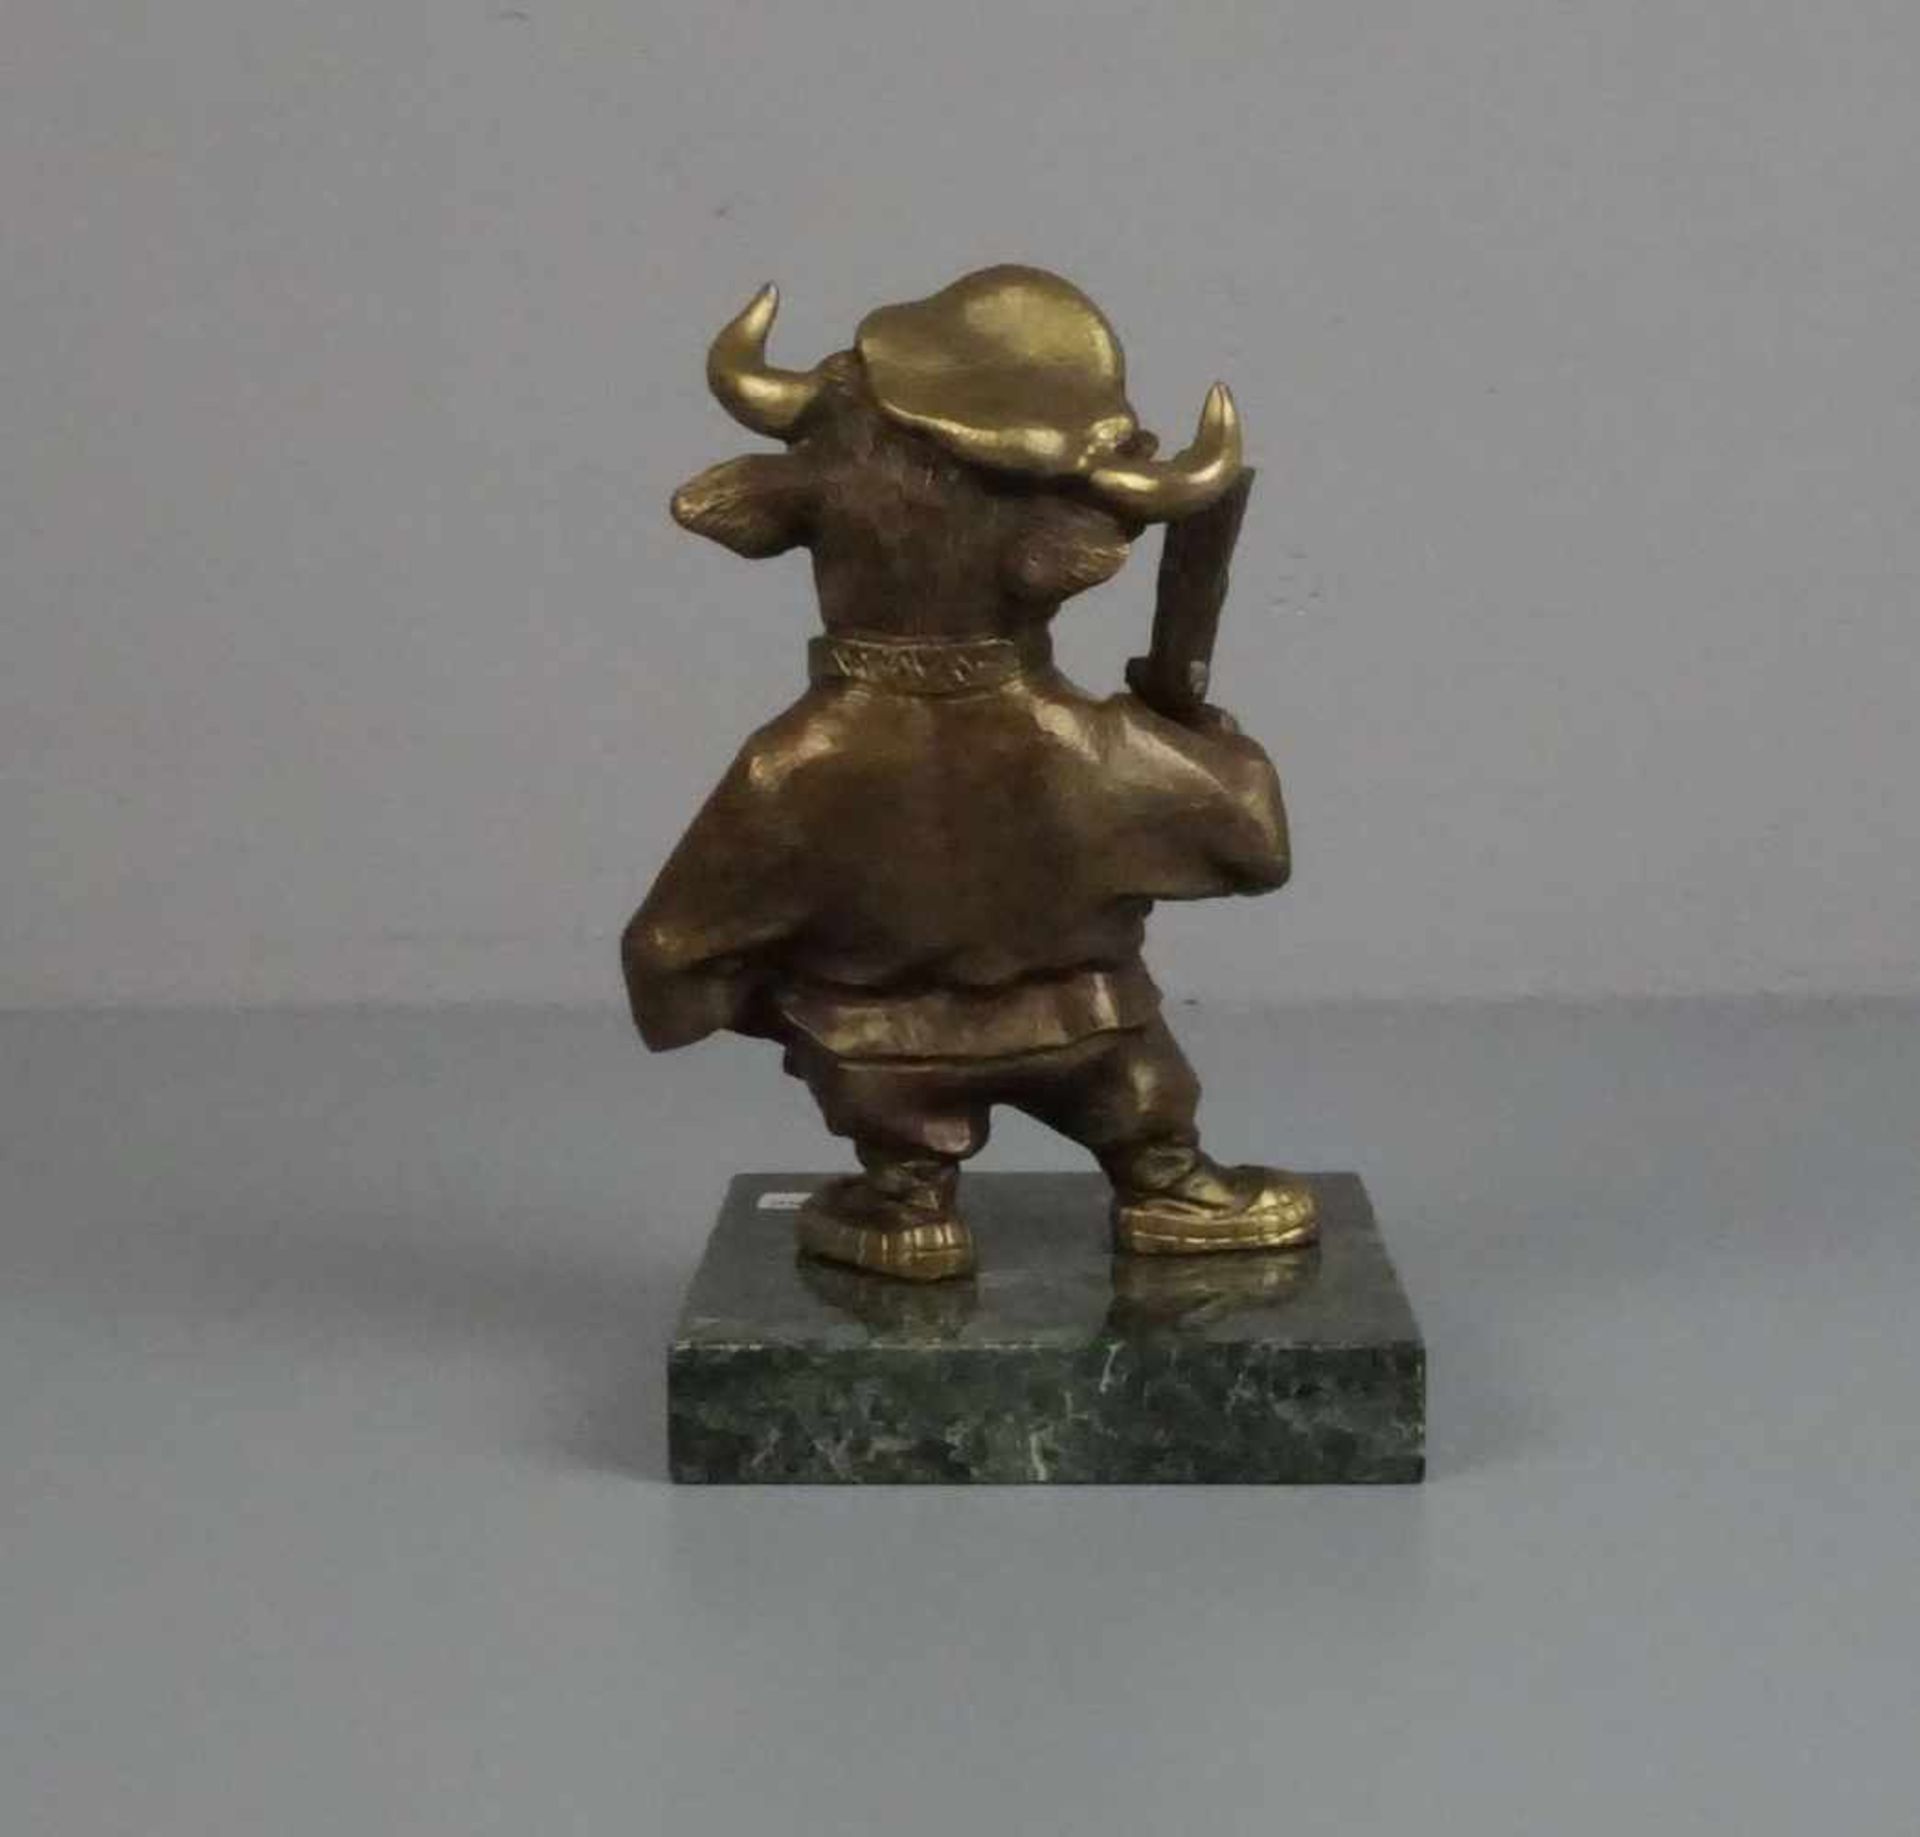 RUSSISCHER BILDHAUER DES 20./21. Jh., Skulptur / sculpture: "Stier als Kosake", Bronze, patiniert, - Image 3 of 5